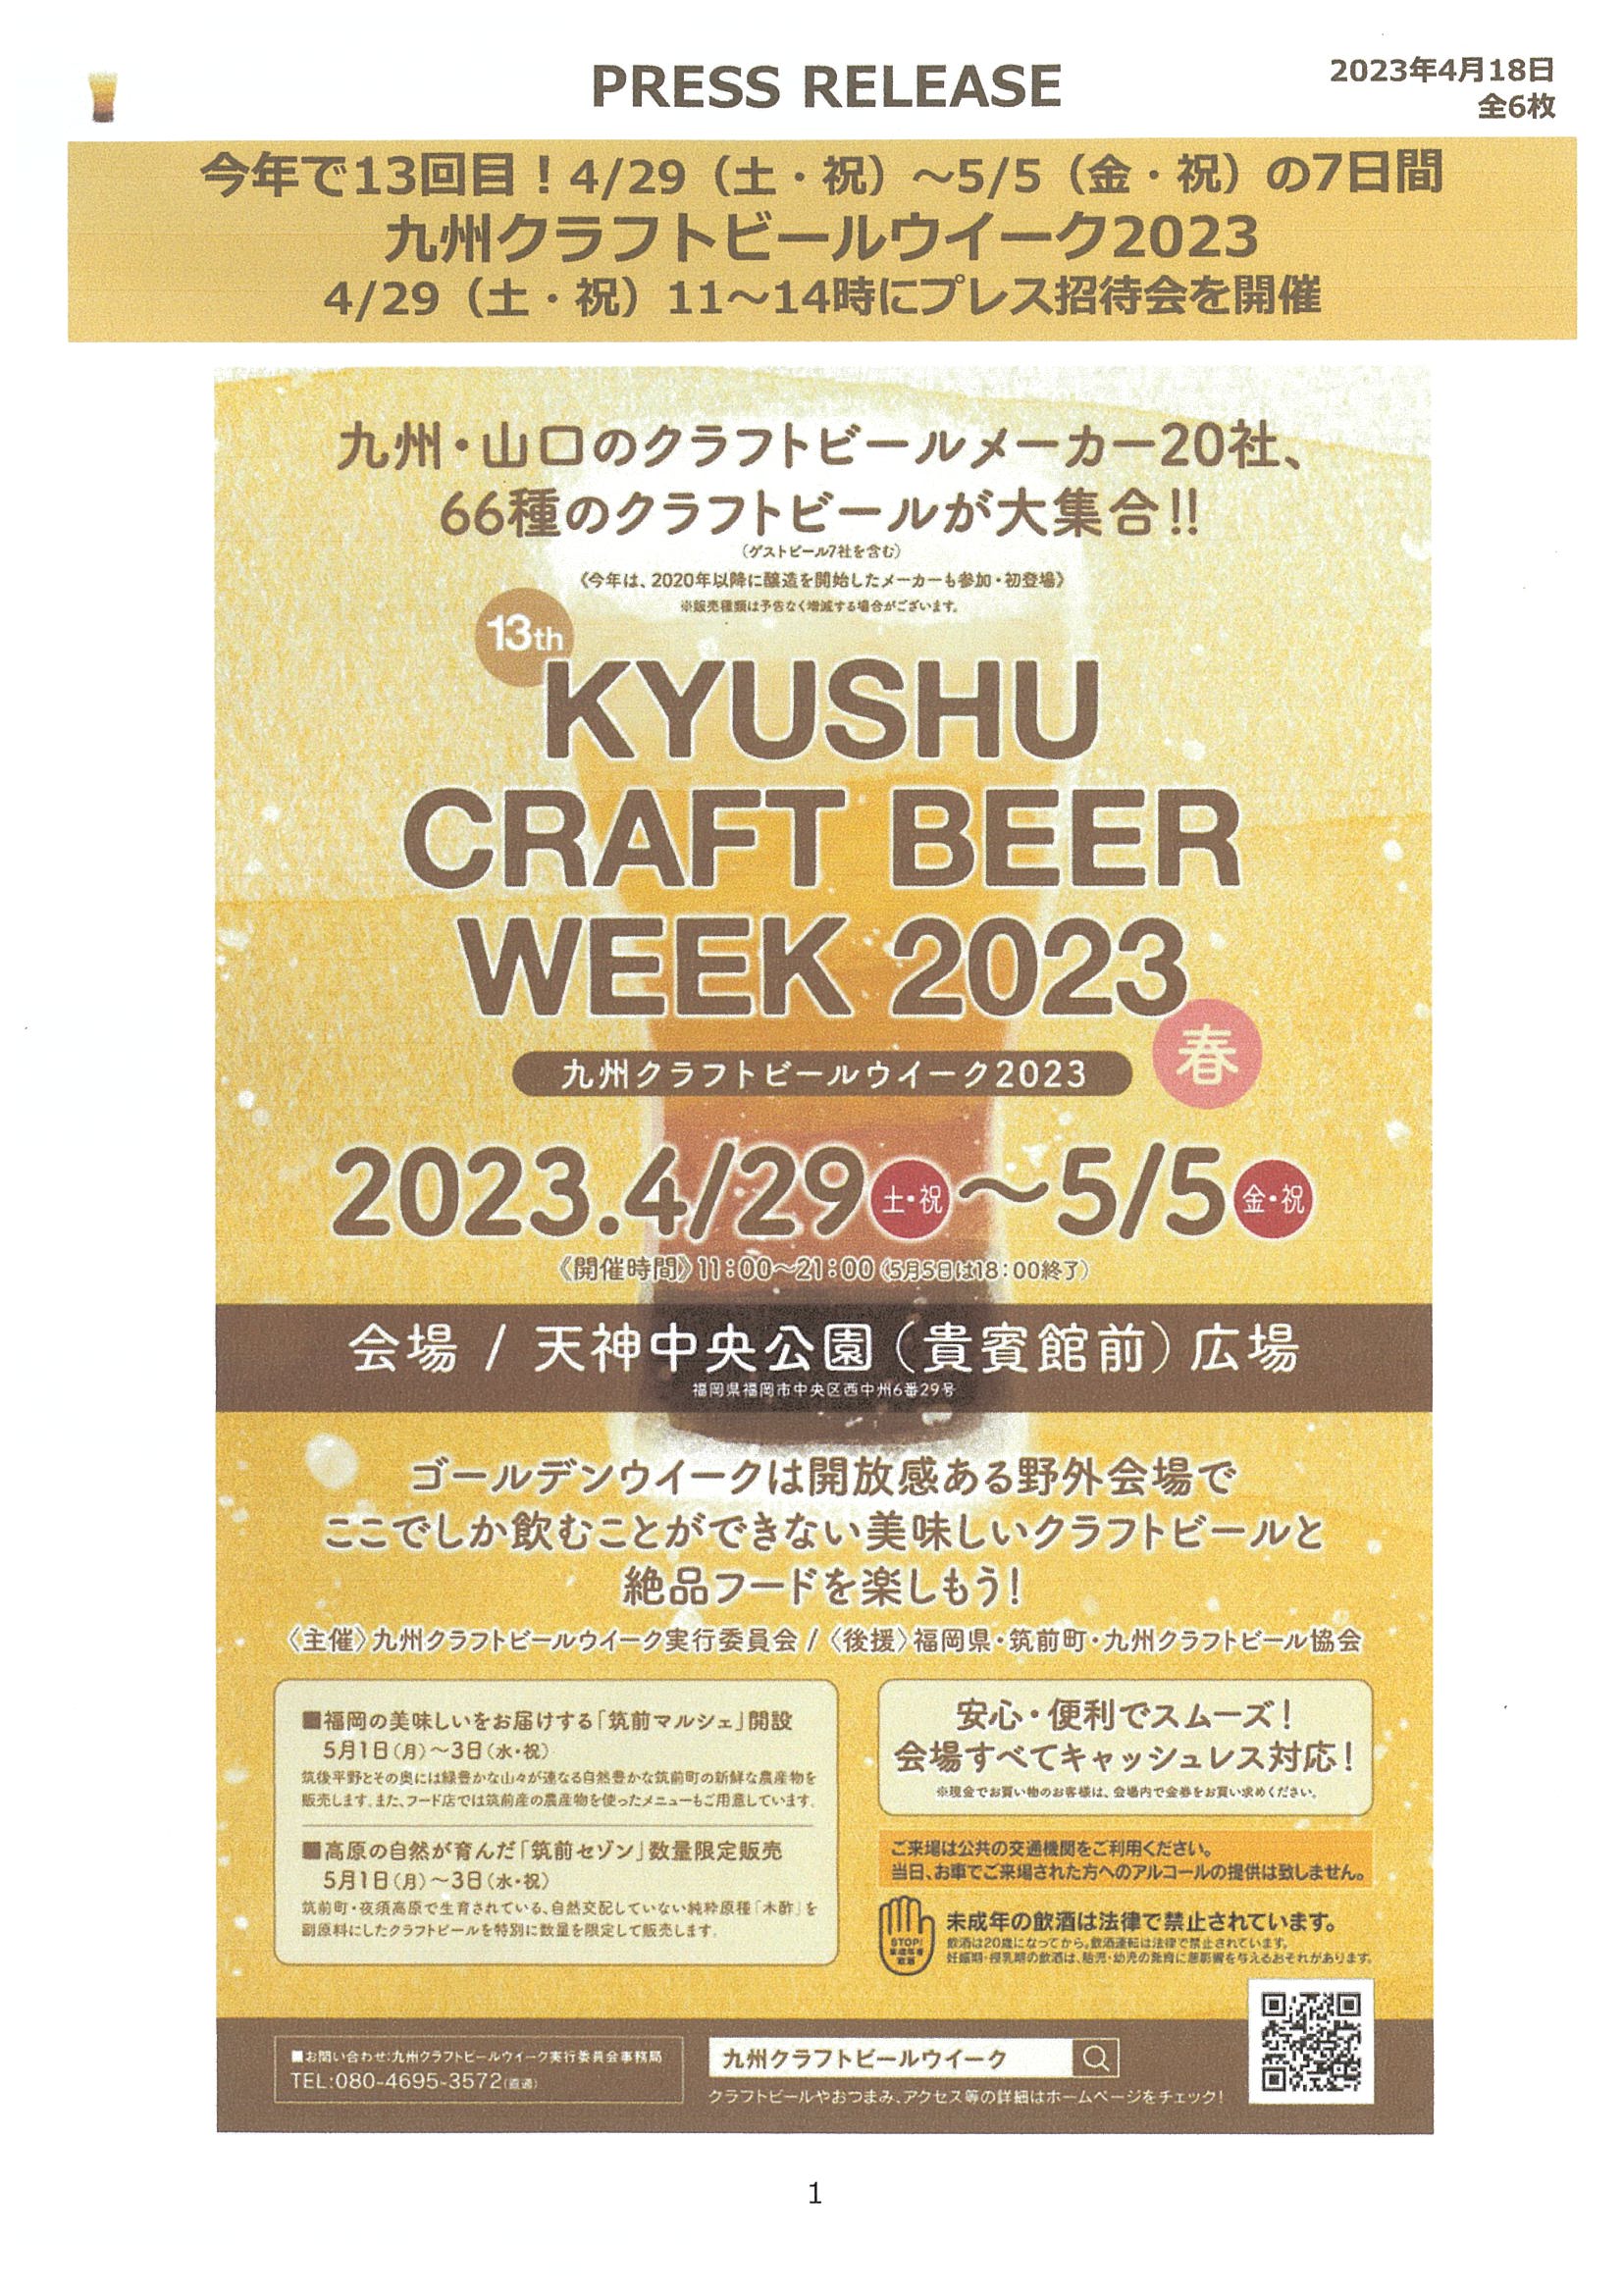 九州クラフトビールウィーク２０２３開催のお知らせ。